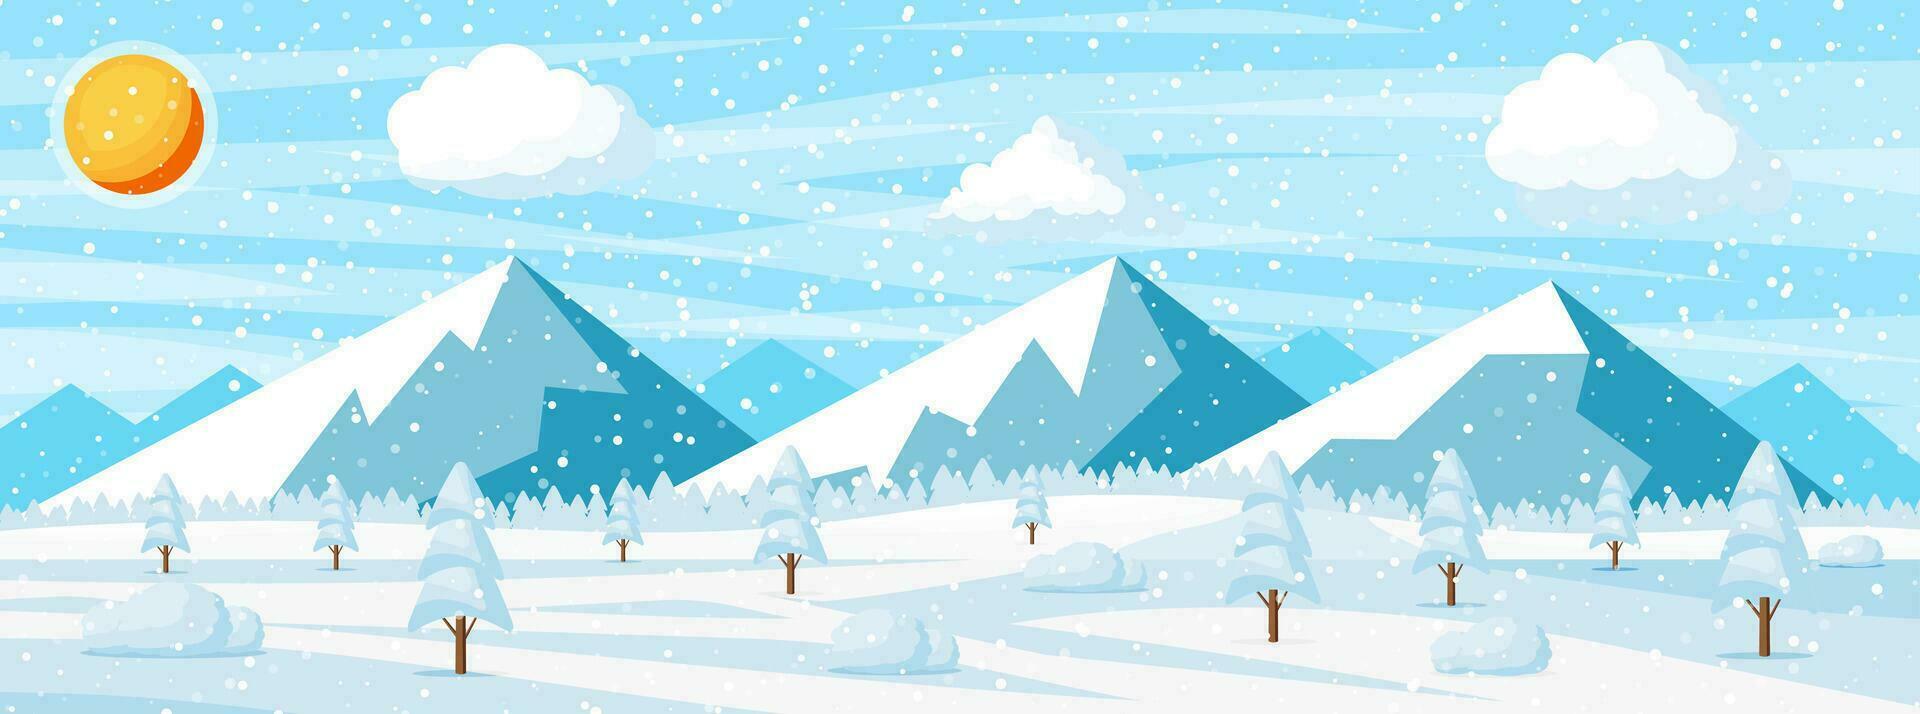 invierno Navidad antecedentes. pino árbol madera y nieve. invierno paisaje con abeto arboles bosque, montaña y nevando contento nuevo año celebracion. nuevo año Navidad día festivo. vector ilustración plano estilo